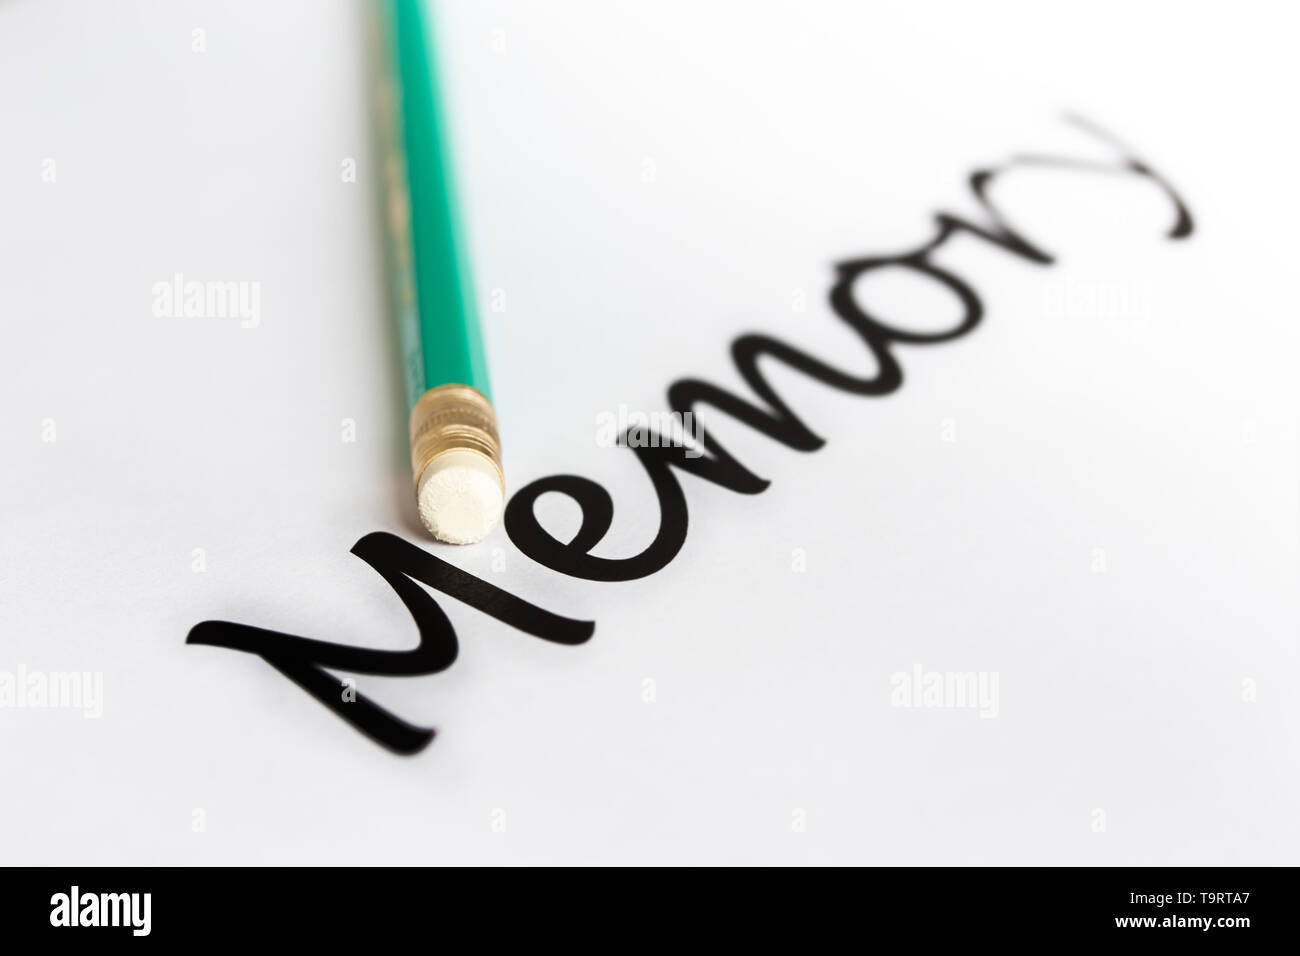 Un crayon avec une gomme et le mot "mémoire" avec une fin floue. Le concept de la mémoire, l'oubli. Banque D'Images